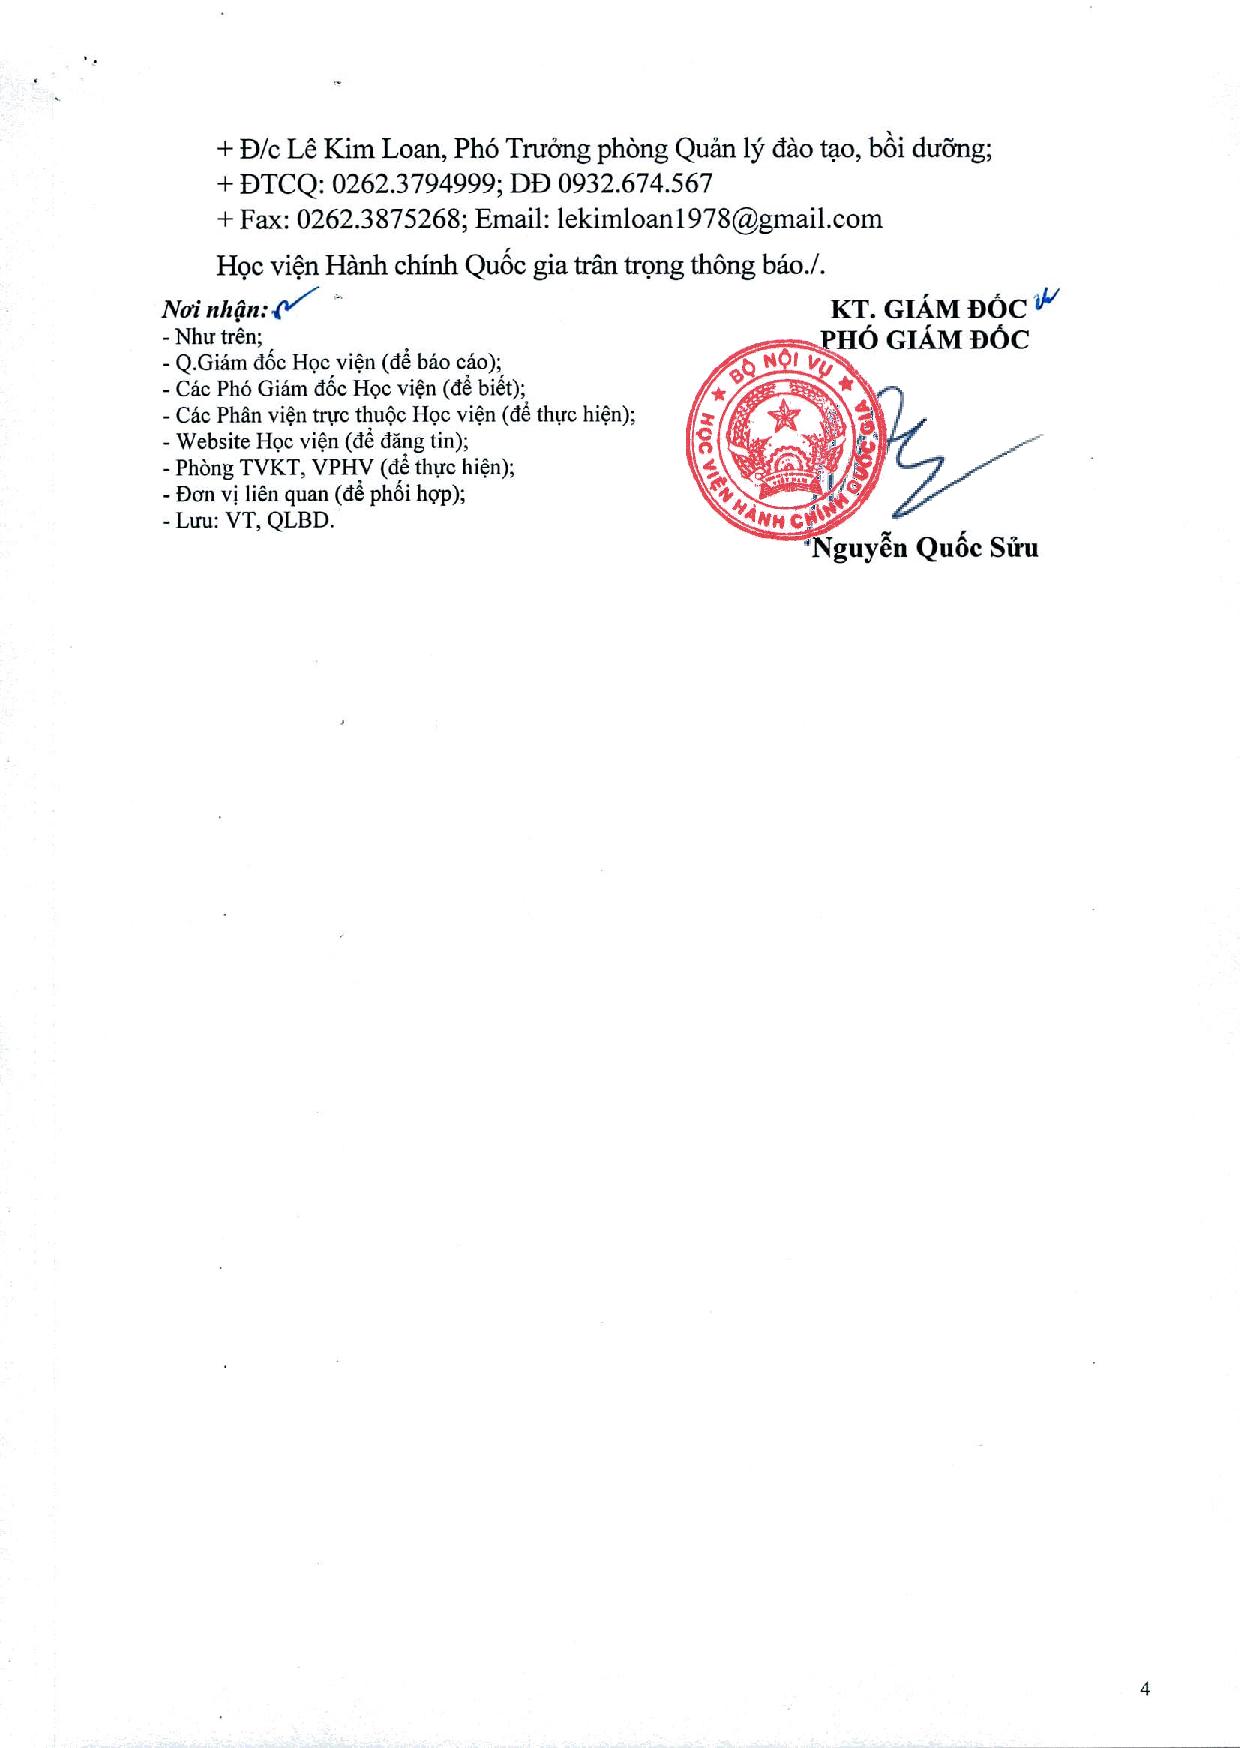 CV chieu sinh BD cong tac ton giao 2023_0001-page-004